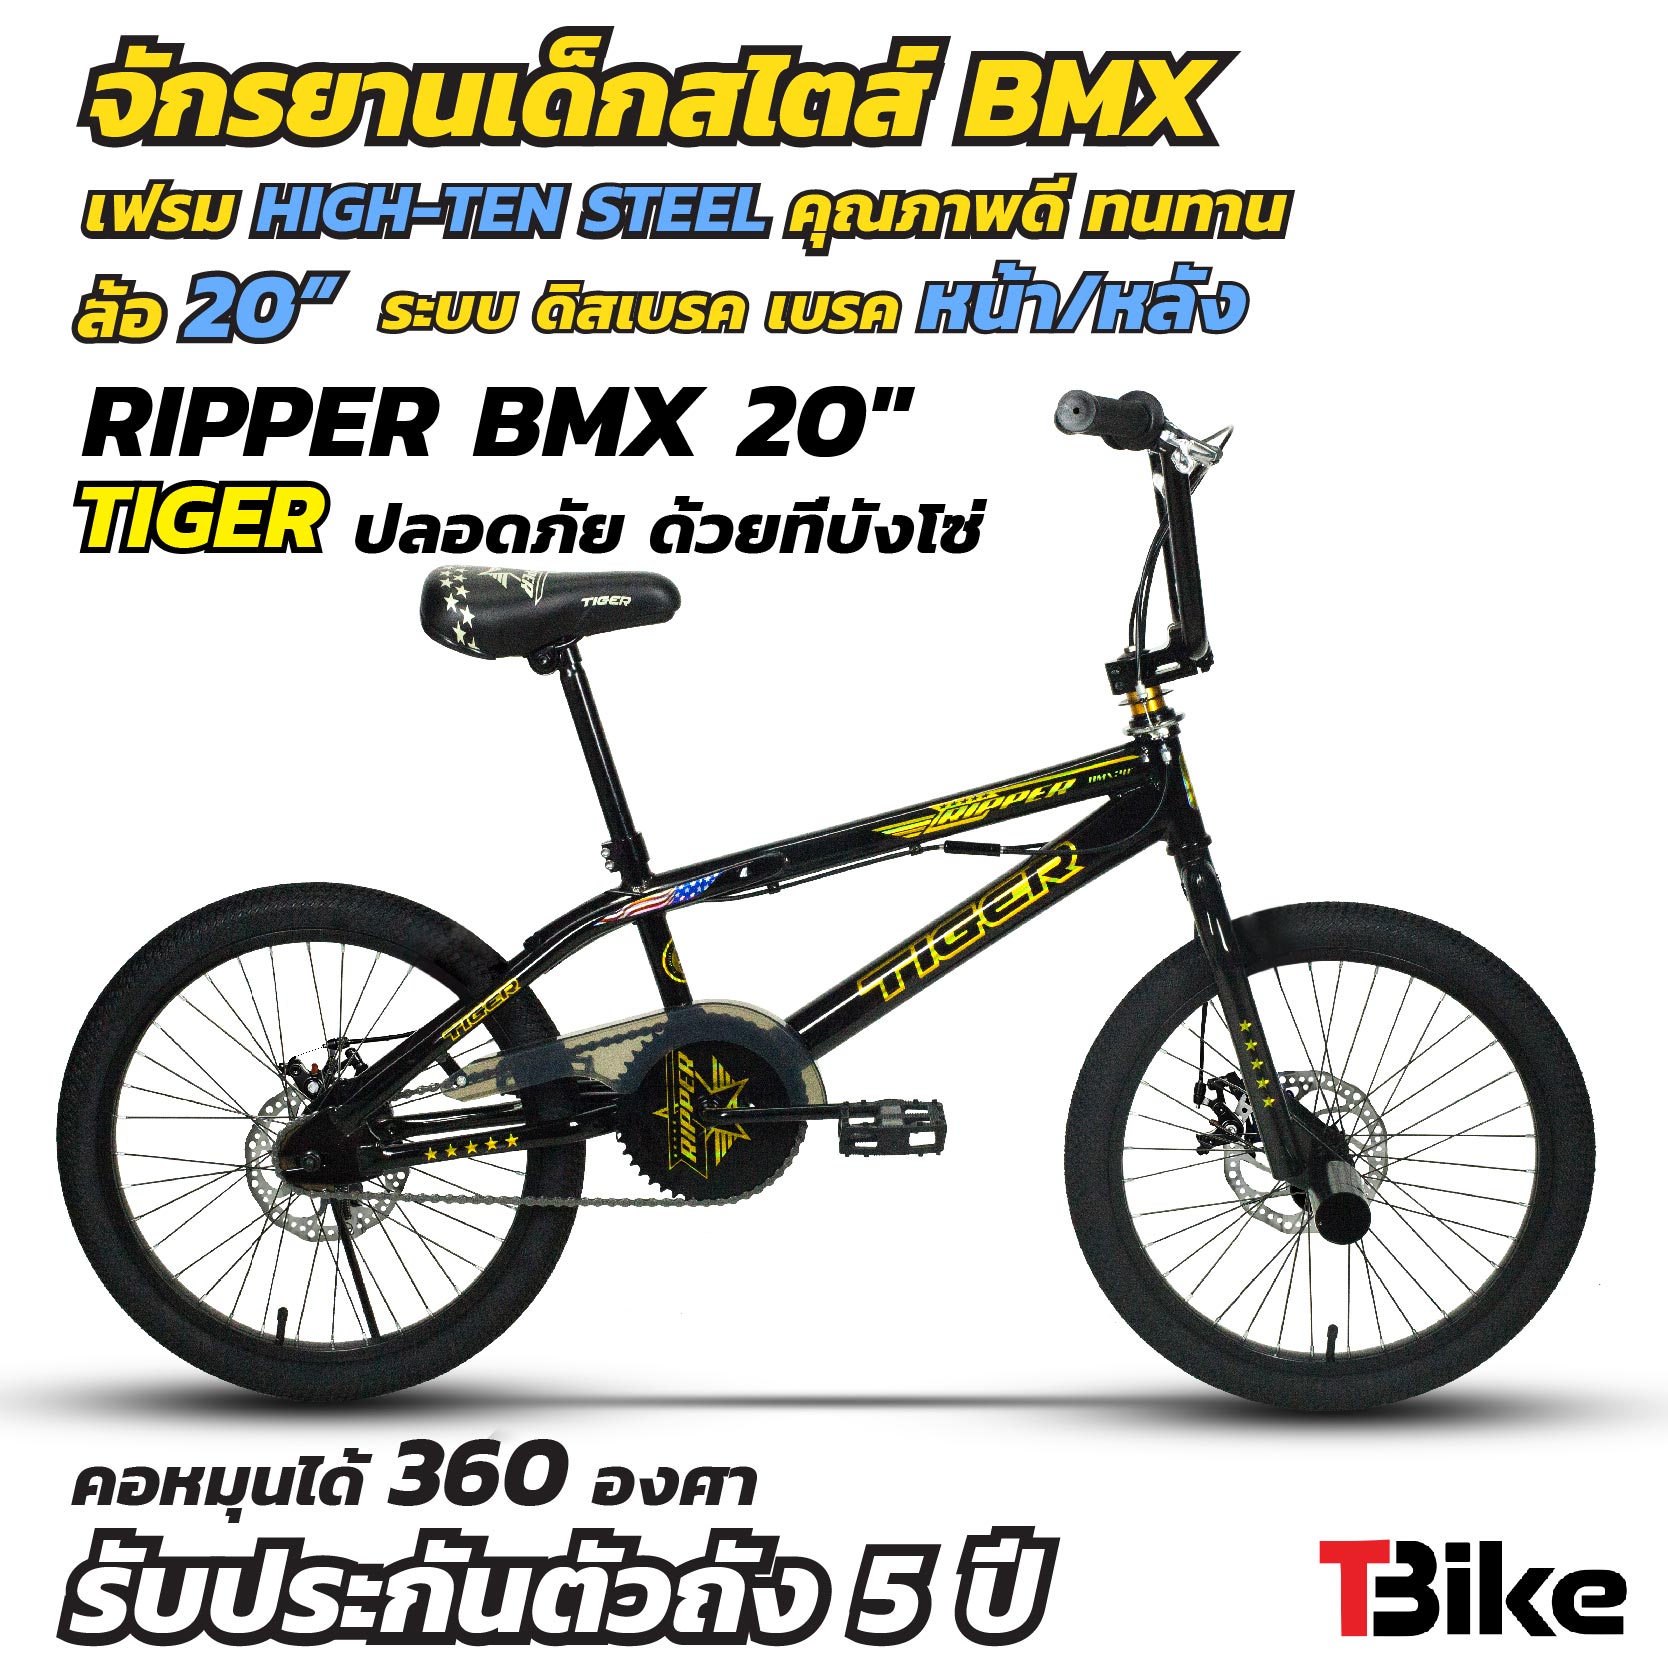 จักรยาน BMX RIPPER จักรยานบีเอ็มเอ็กซ์ คอโรเตอร์ หมุนได้ 360 องศา  เฟรม สีอโนไดซ์   ล้อ20 นิ้ว ยางใหญ่  จักรยานเล่นท่าได้ มีสไตล์ ปั่นสนุก